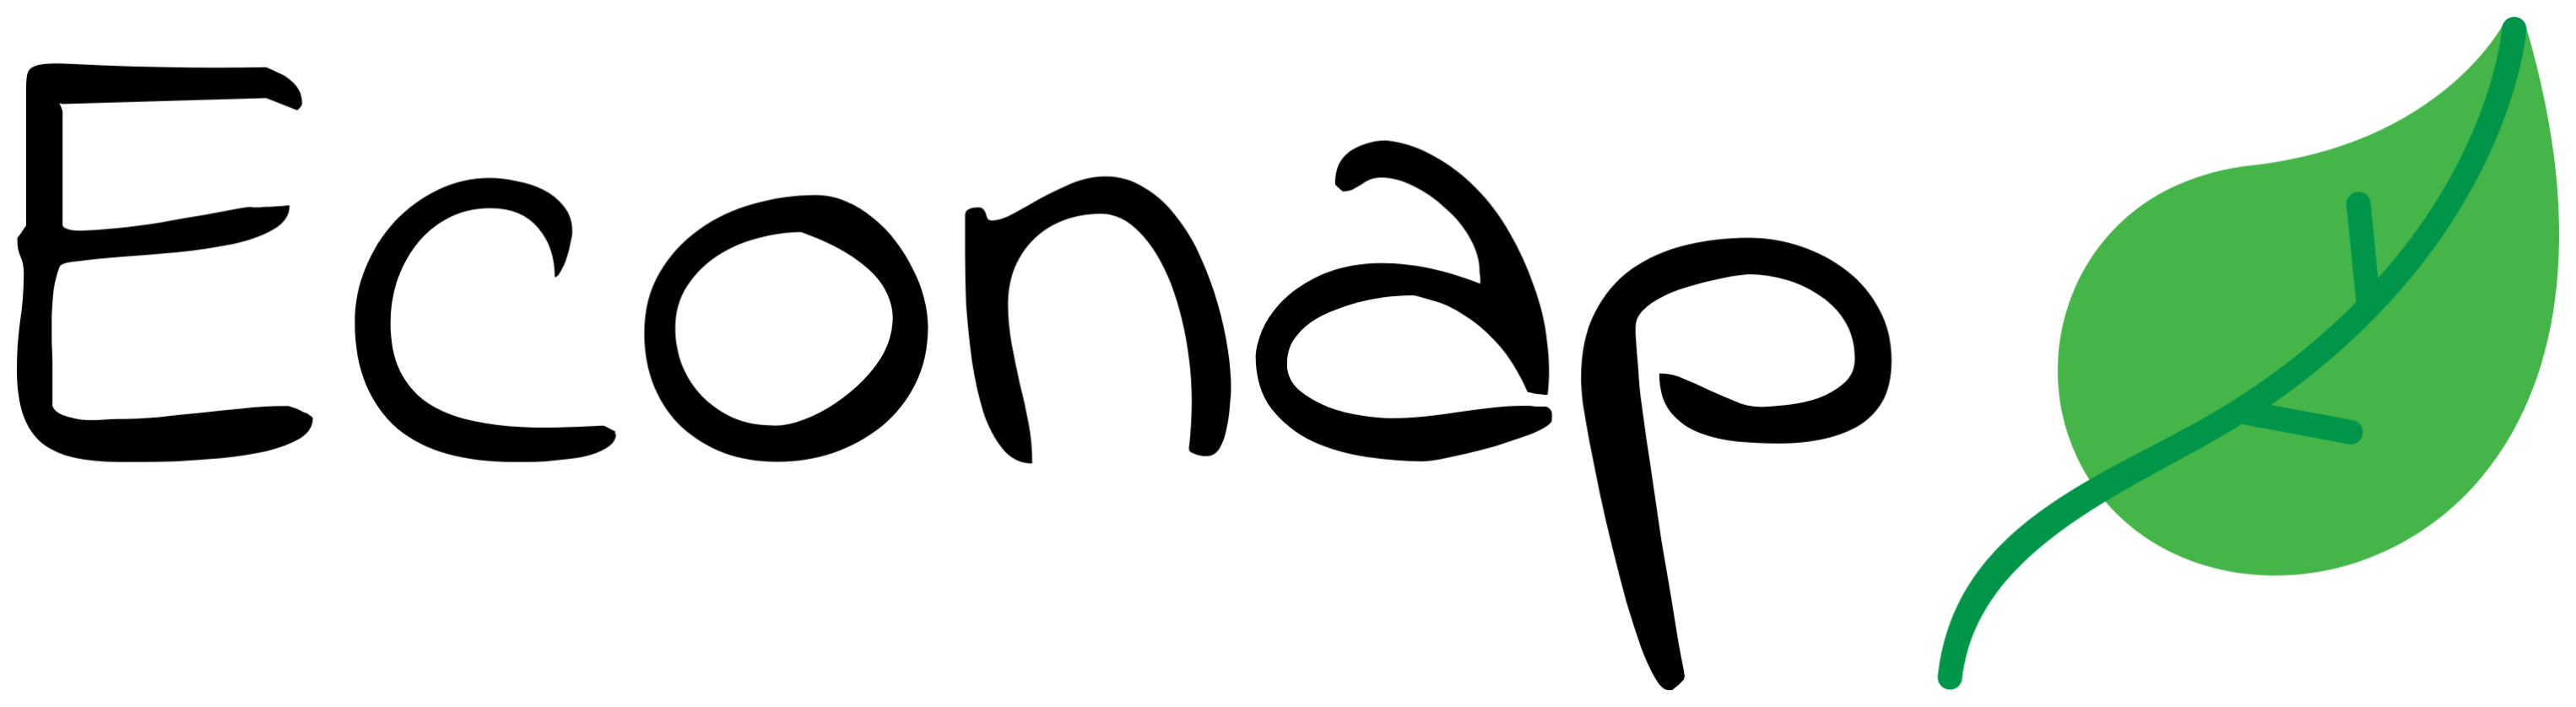 Logo full black